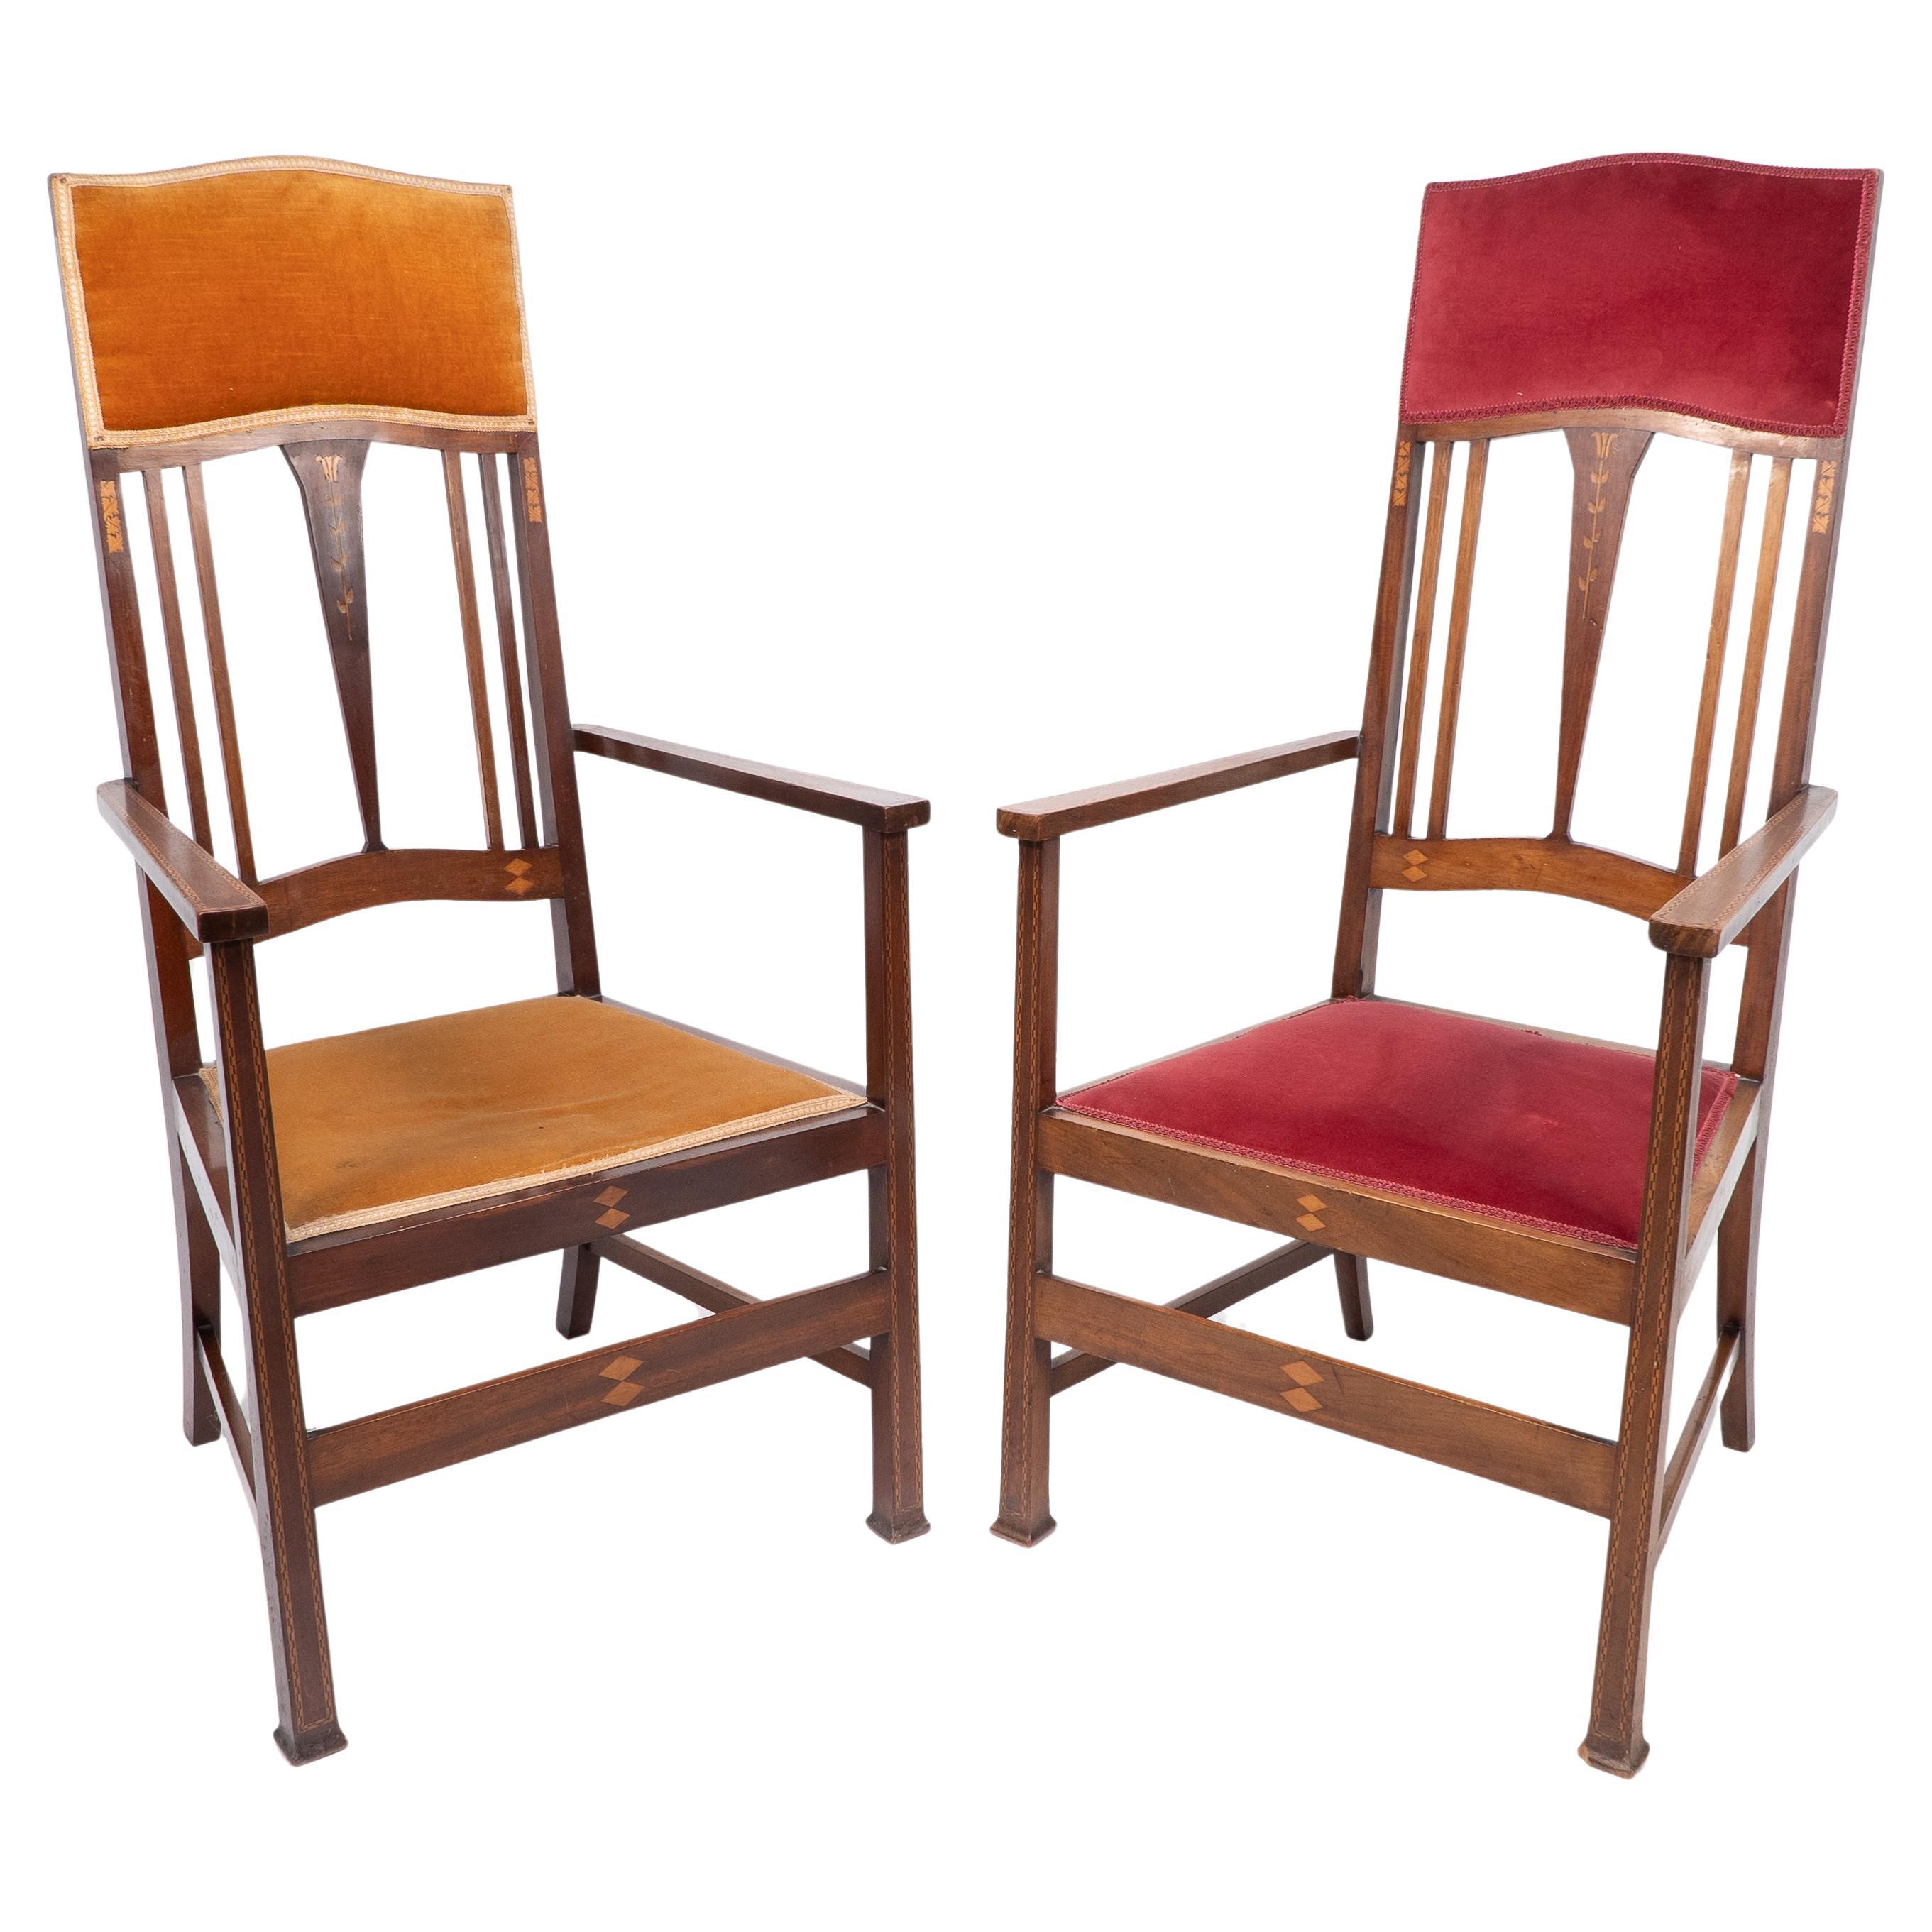 Liberty & Co. Deux fauteuils Arts & Crafts en acajou avec incrustations florales stylisées